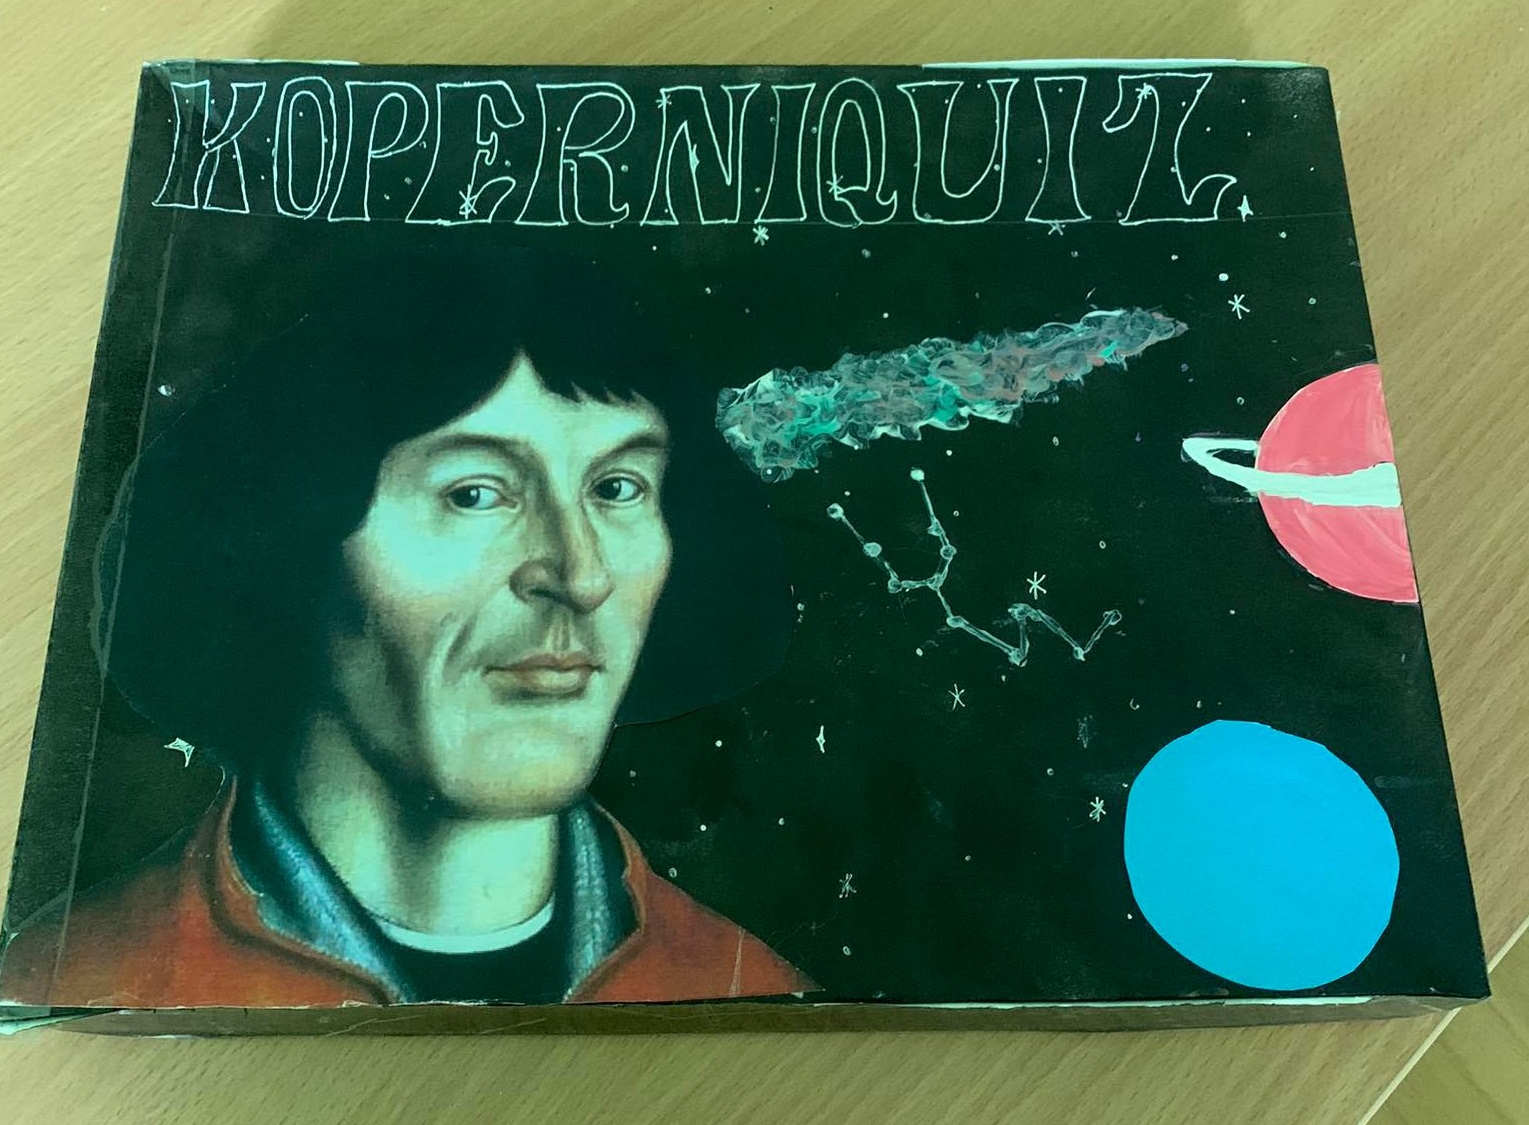 gra o Mikołaju Koperniku przygotowana przez uczniów szkoły